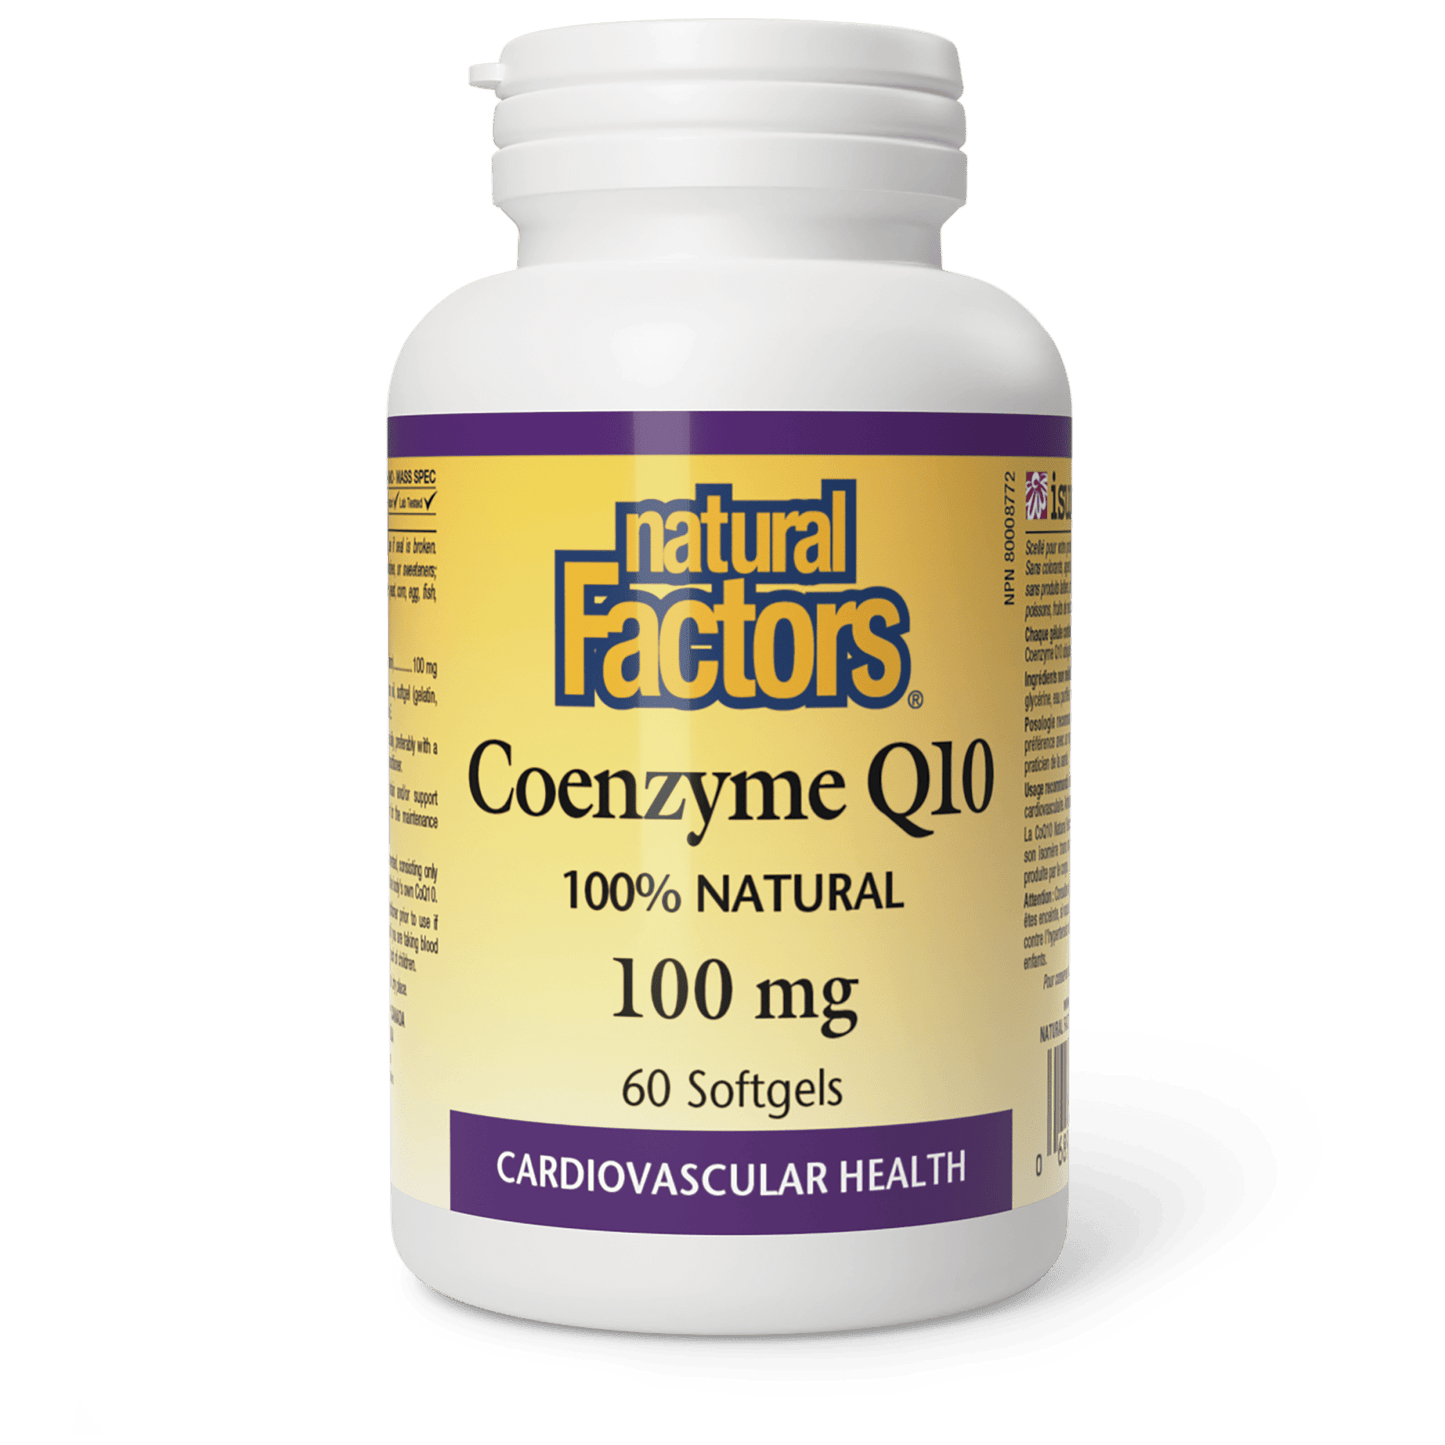 Coenzyme Q10 100% Natural 100 mg, Natural Factors|v|image|2071